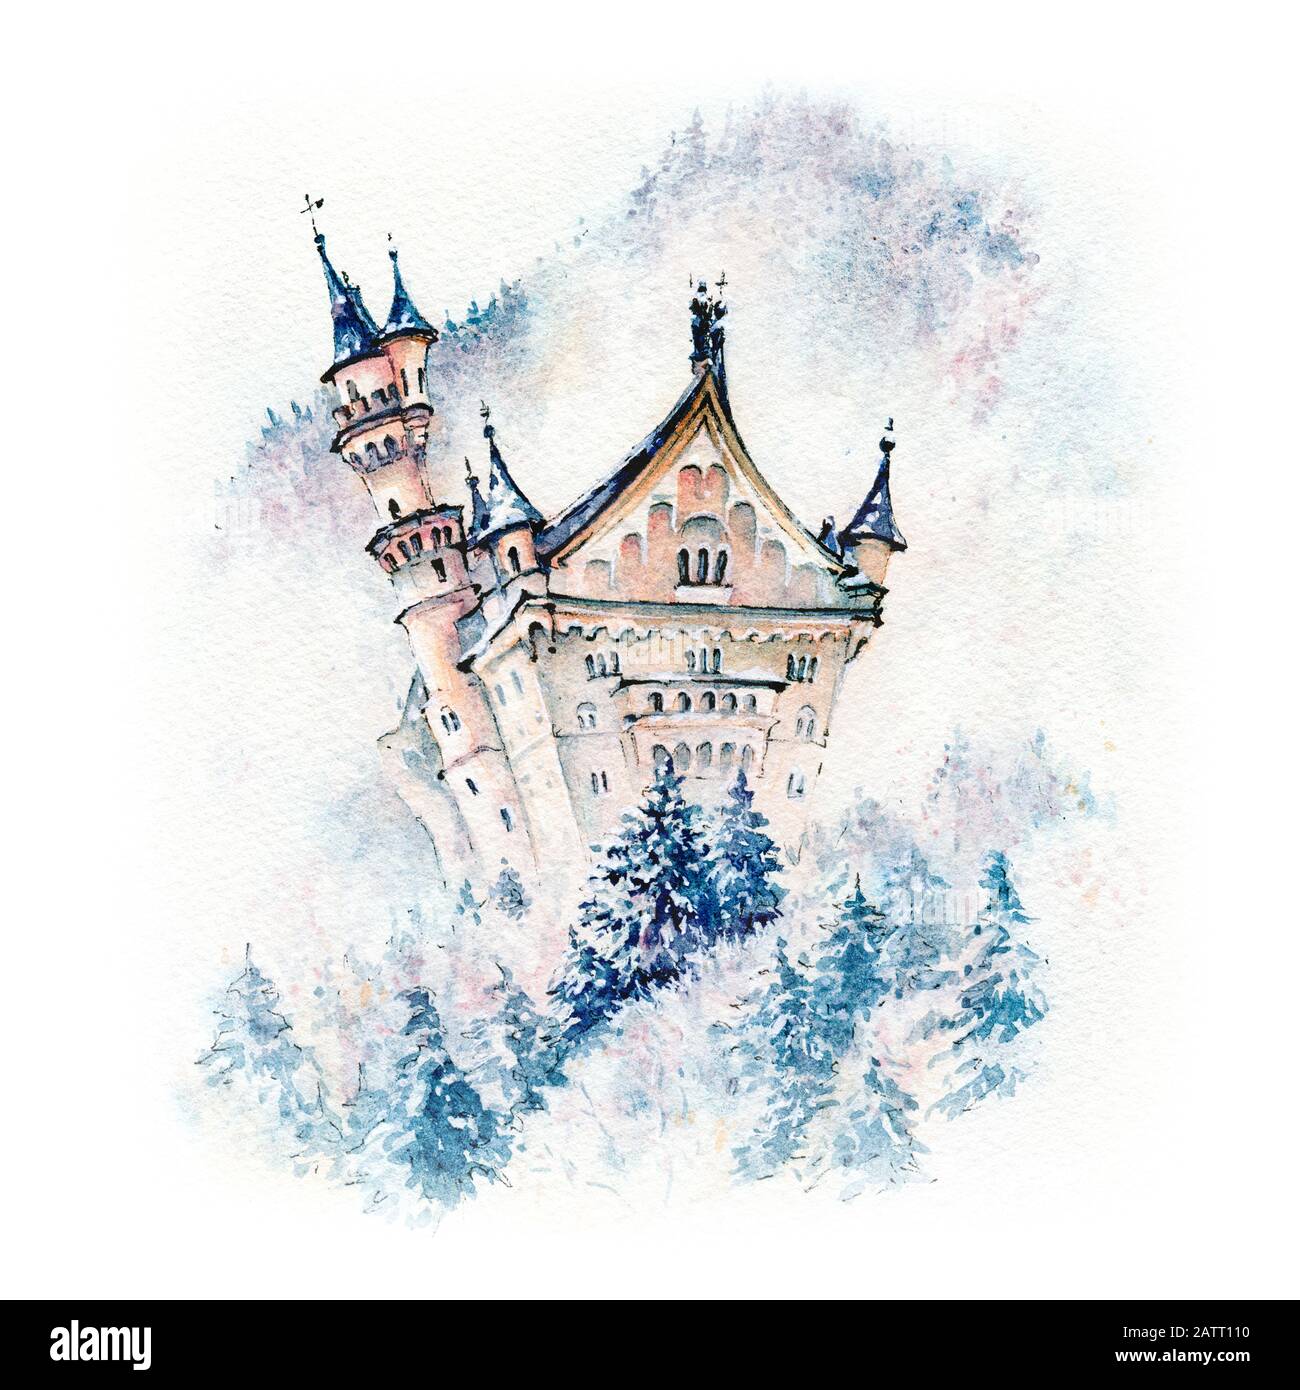 Attraction touristique de renommée mondiale dans les Alpes bavaroises, le château de Neuschwanstein, le palais roman de Revival du XIXe siècle en hiver, en Bavière, en Allemagne Banque D'Images